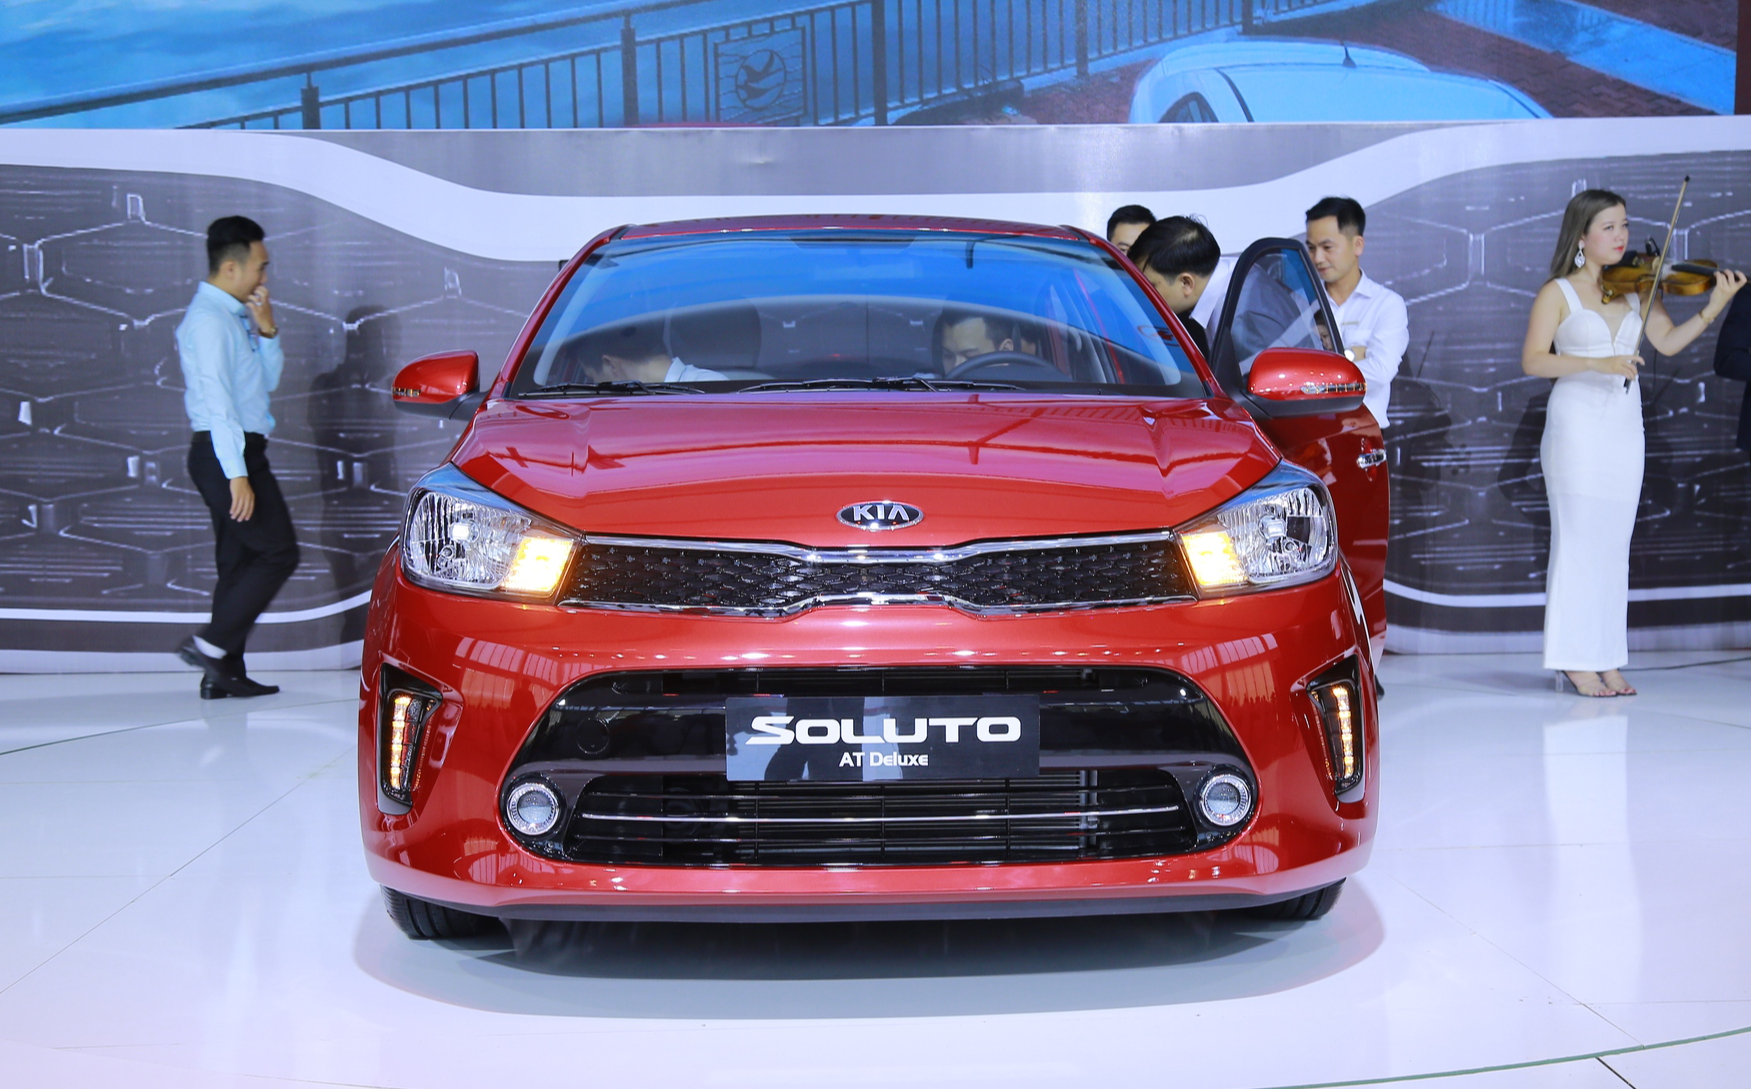 6 mẫu ô tô giá rẻ nhất tại Việt Nam hiện nay - Ảnh 6.